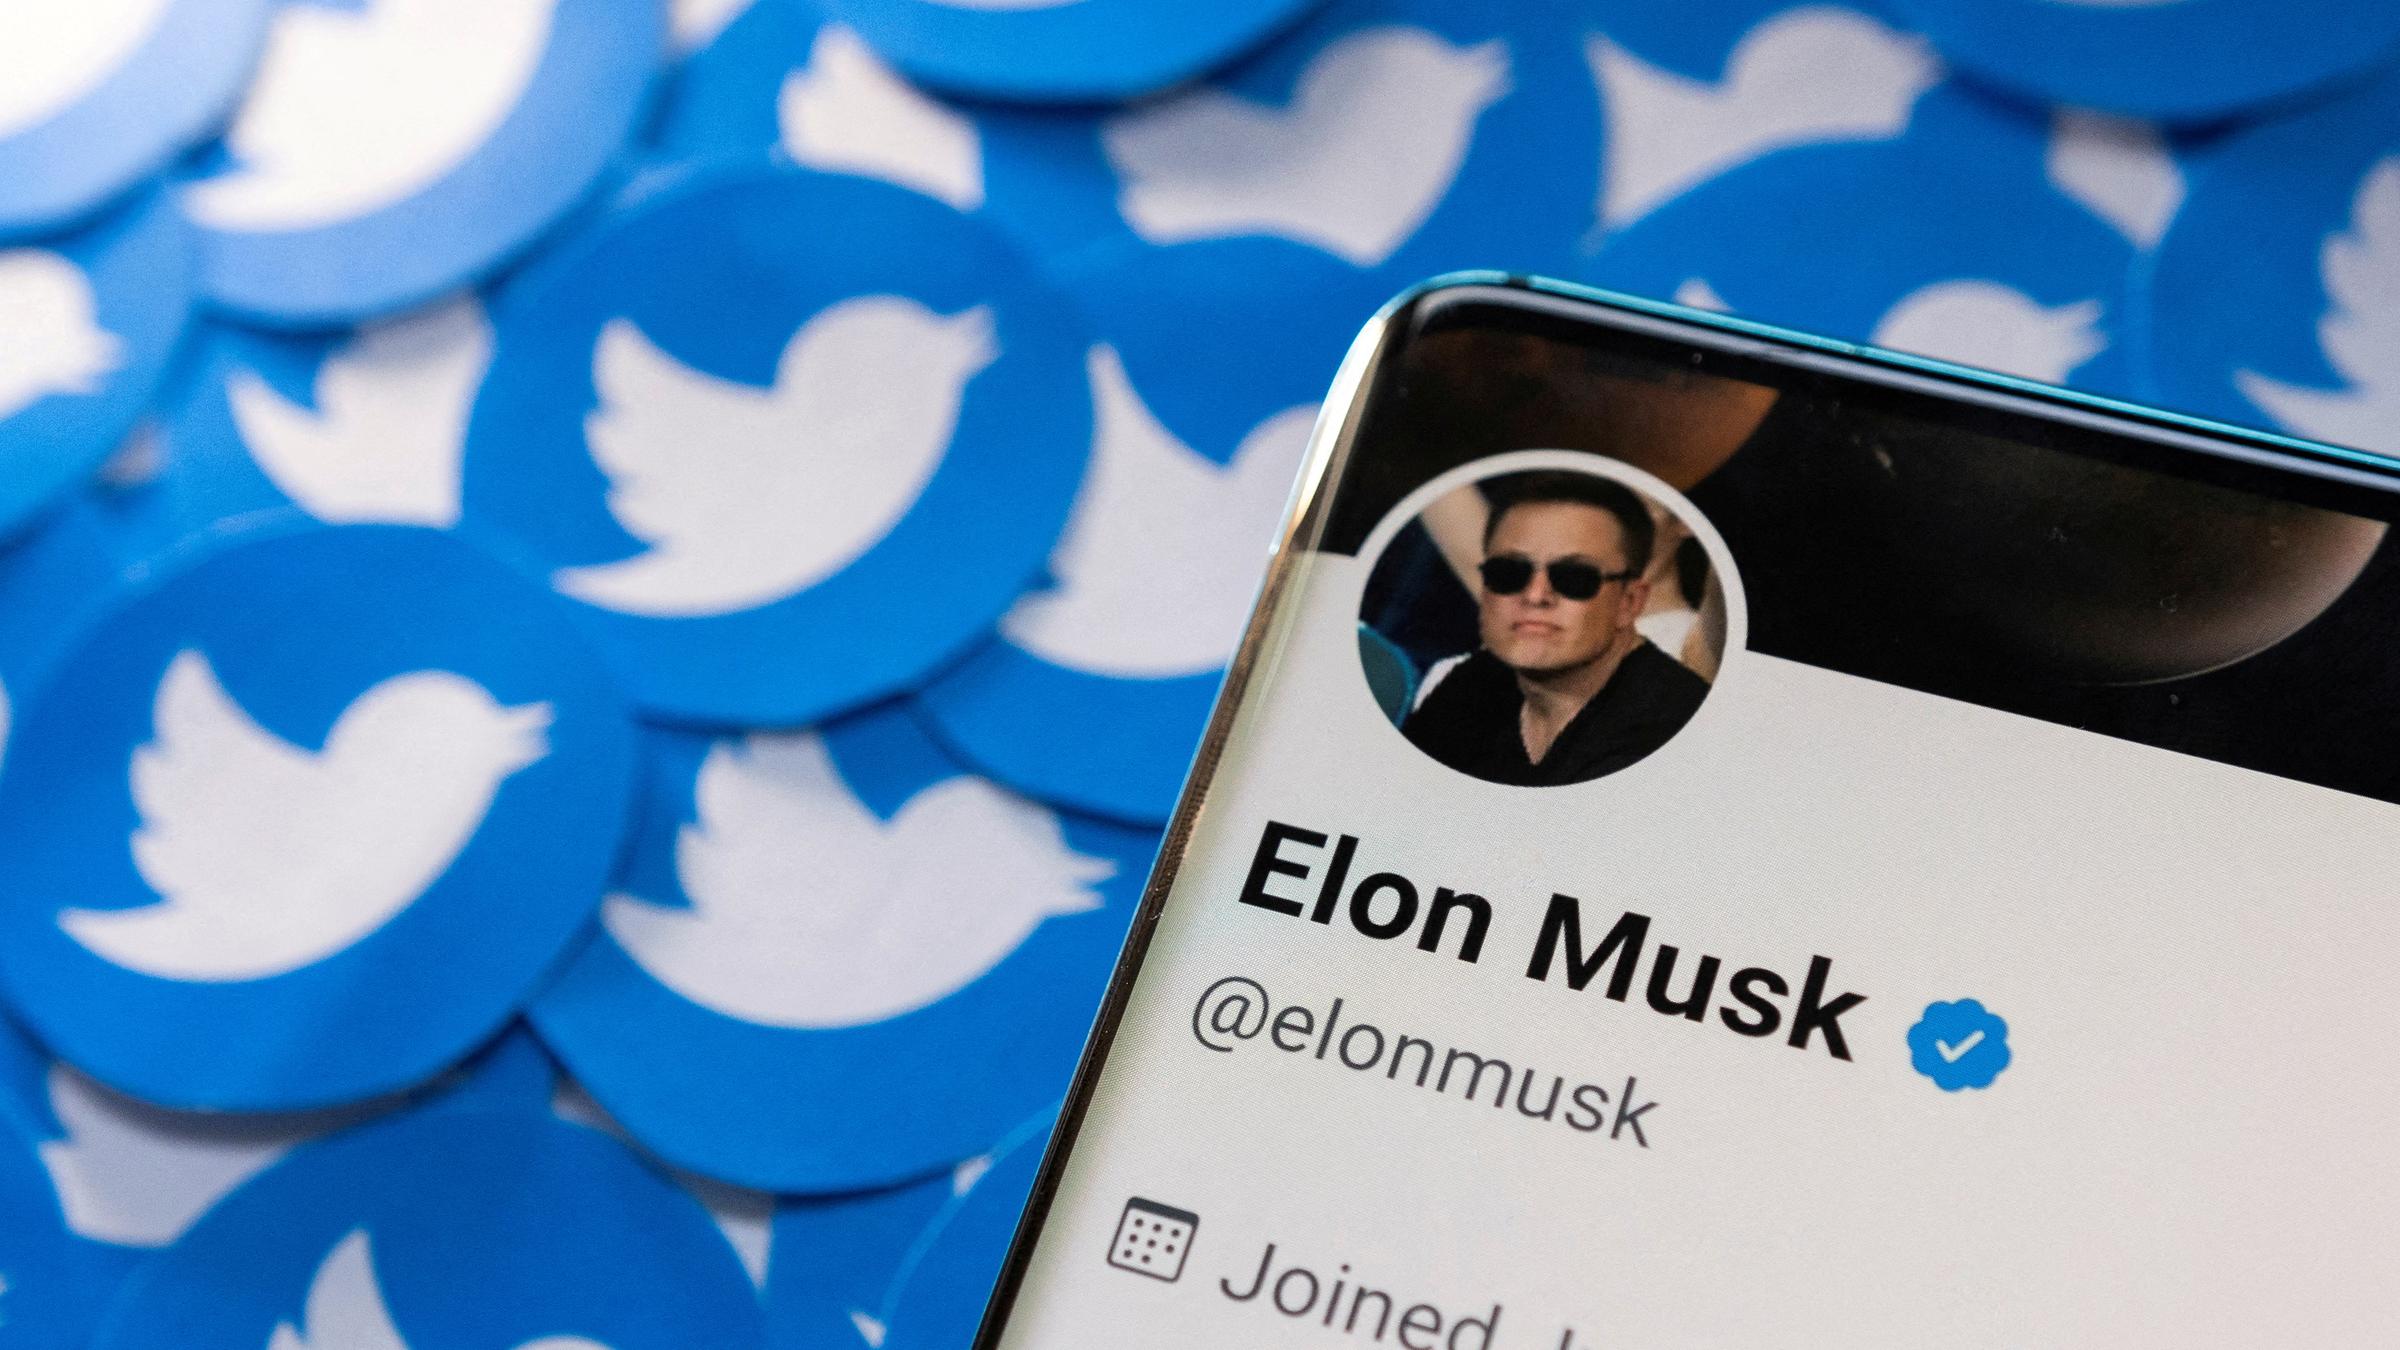 Twitter-Profil von Elon Musk, das auf gedruckten Twitter-Logos platziert ist, aufgenommen am 28.04.2022